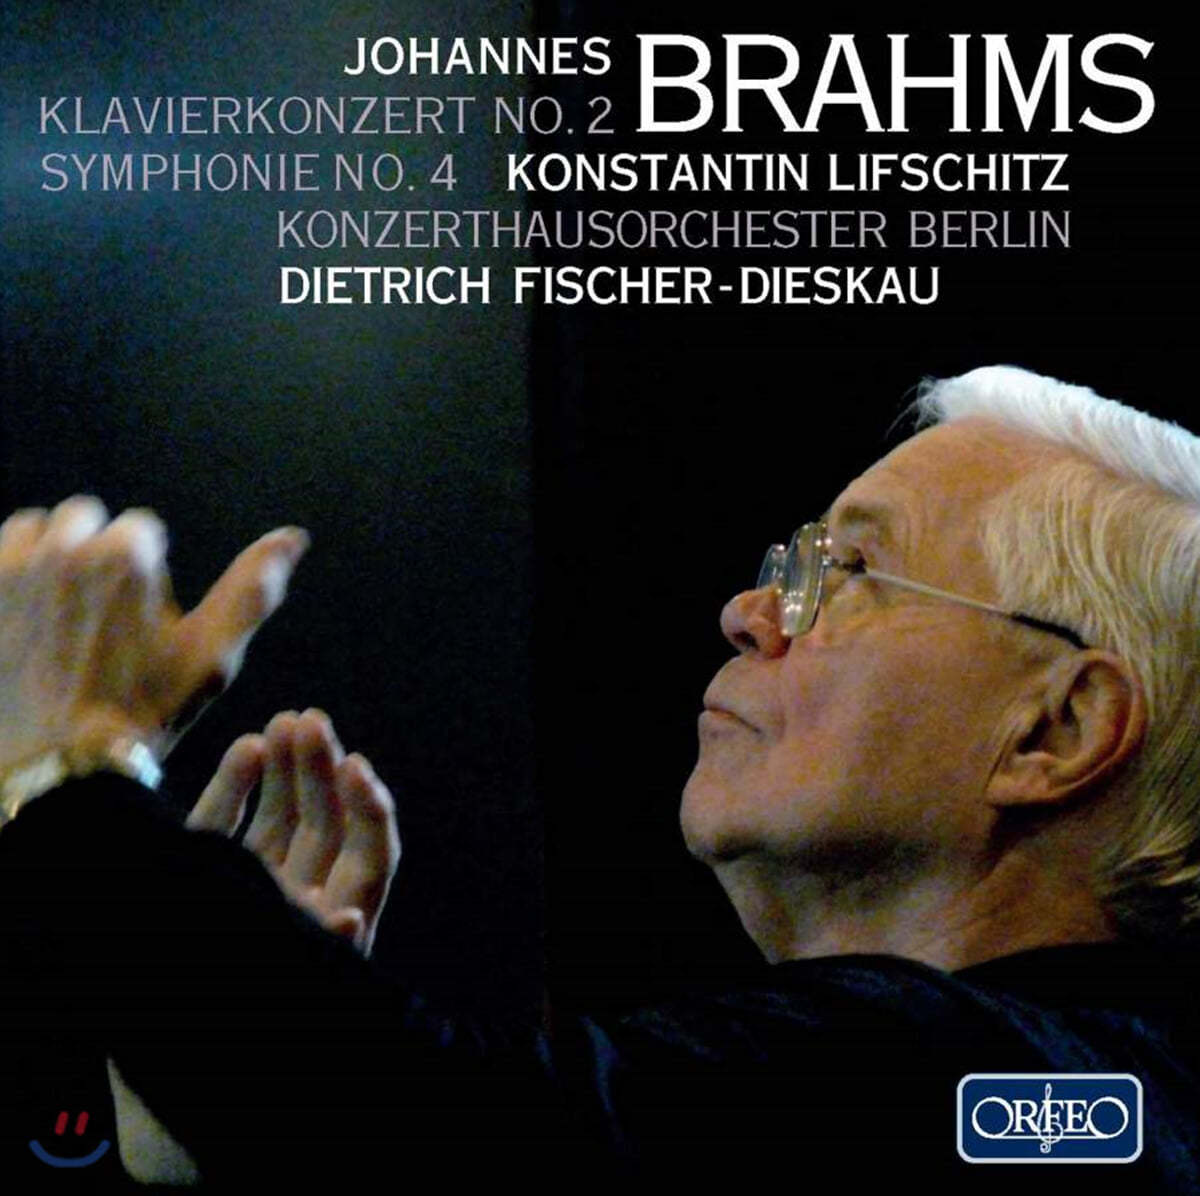 Dietrich Fischer-Dieskau / Konstantin Lifschitz 브람스: 피아노 협주곡 2번, 교향곡 4번